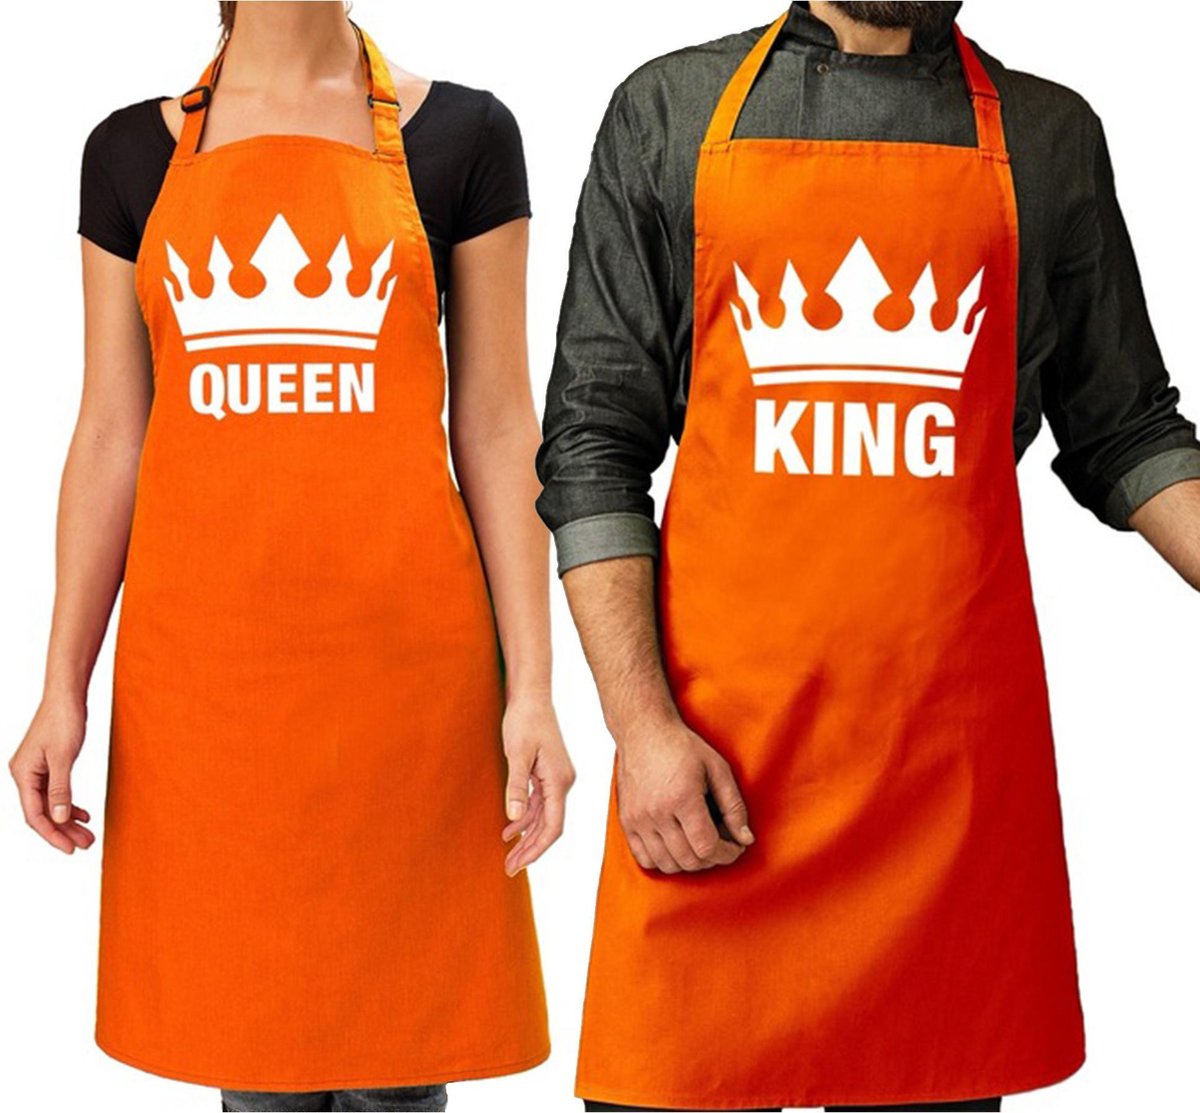 Koppel cadeau set: 1x King keukenschort oranje heren + 1x Queen keukenschort oranje dames